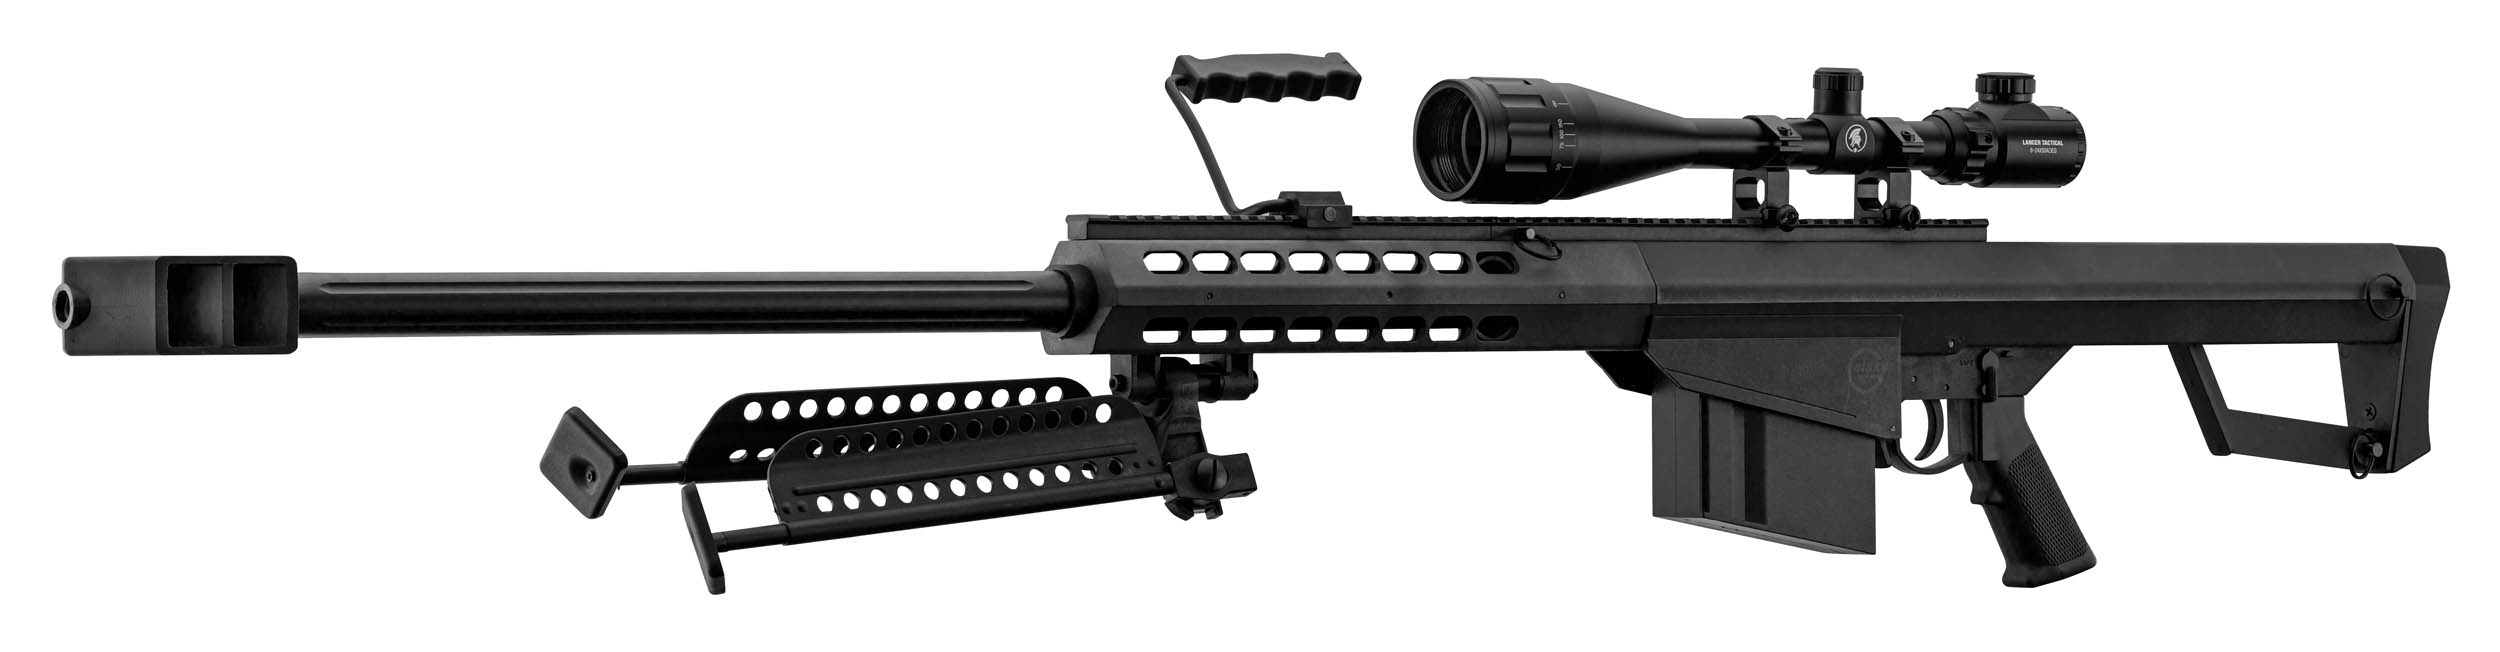 PCKLR3050-07 Pack Sniper LT-20 noir M82 1,5J + lunette + bi-pied + poignée